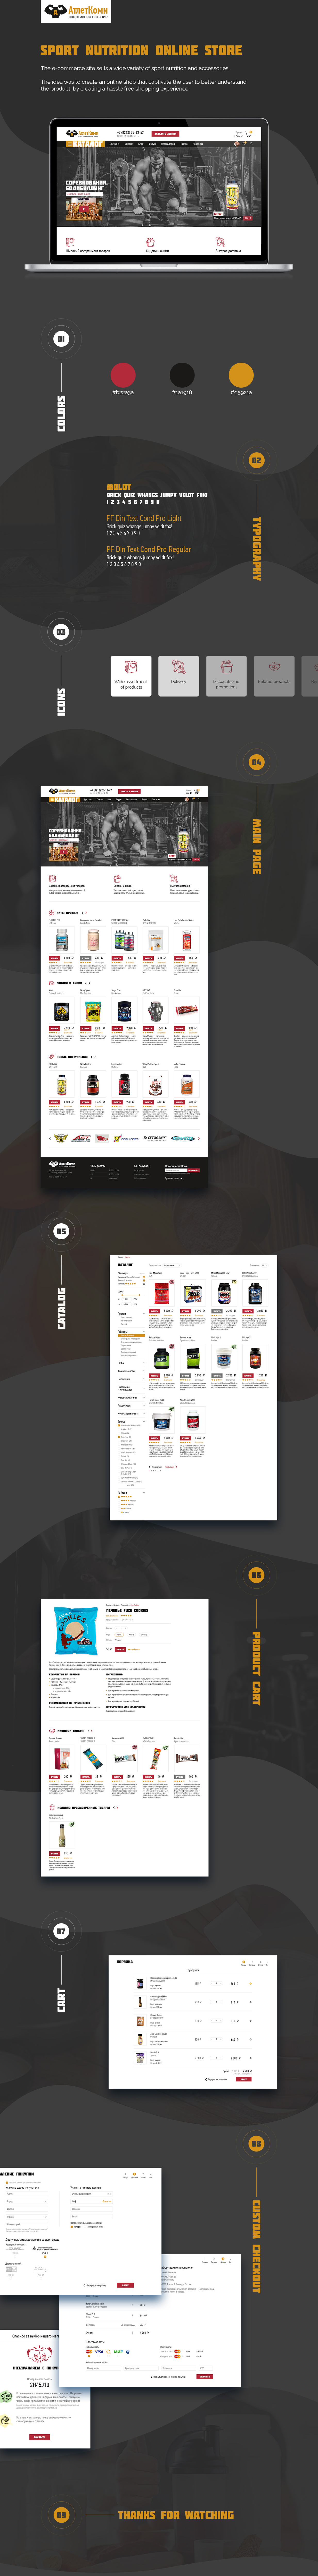 Web UI ux online store sport Web Design 